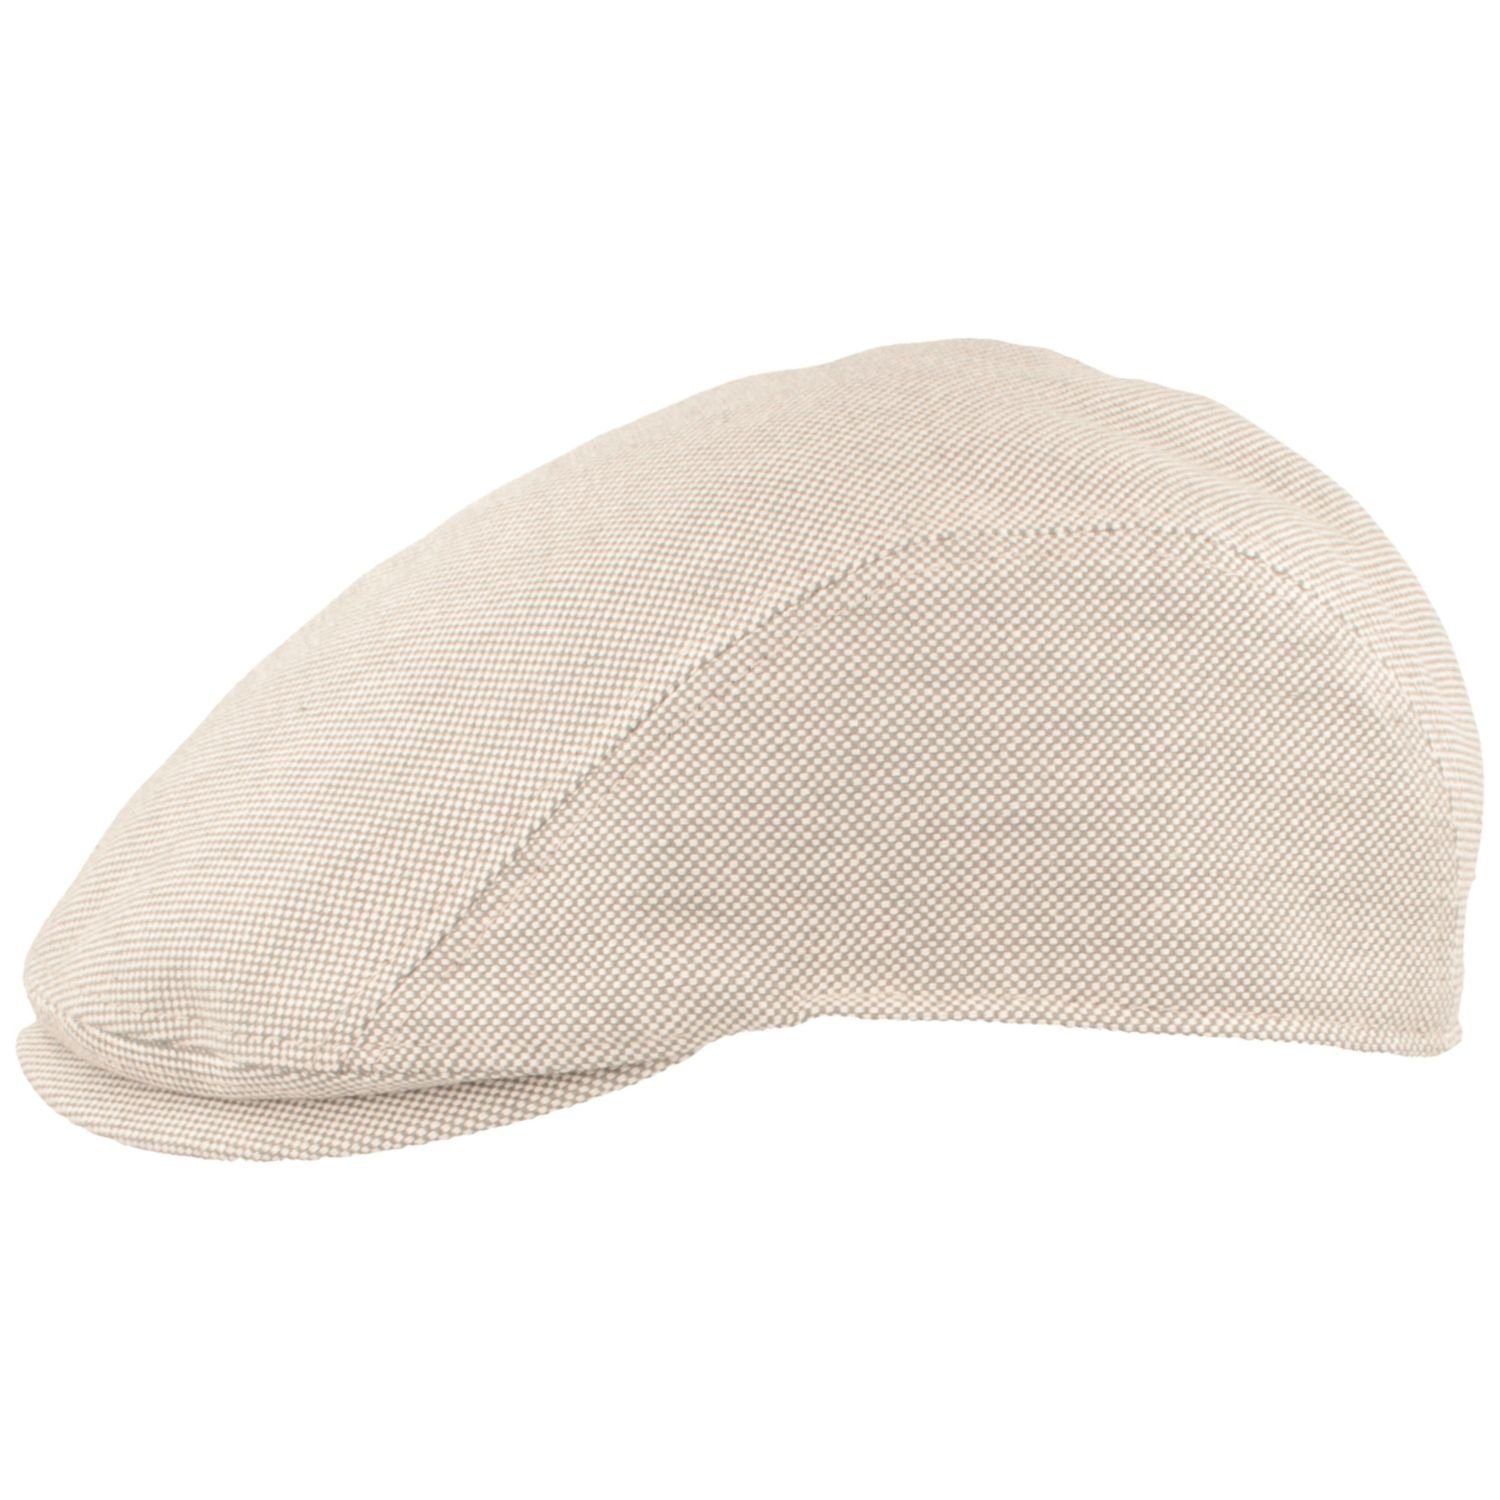 Sommer-Mütze grau aus 100% 530 Schiebermütze mel. Baumwoll-Strukturstoff Bullani